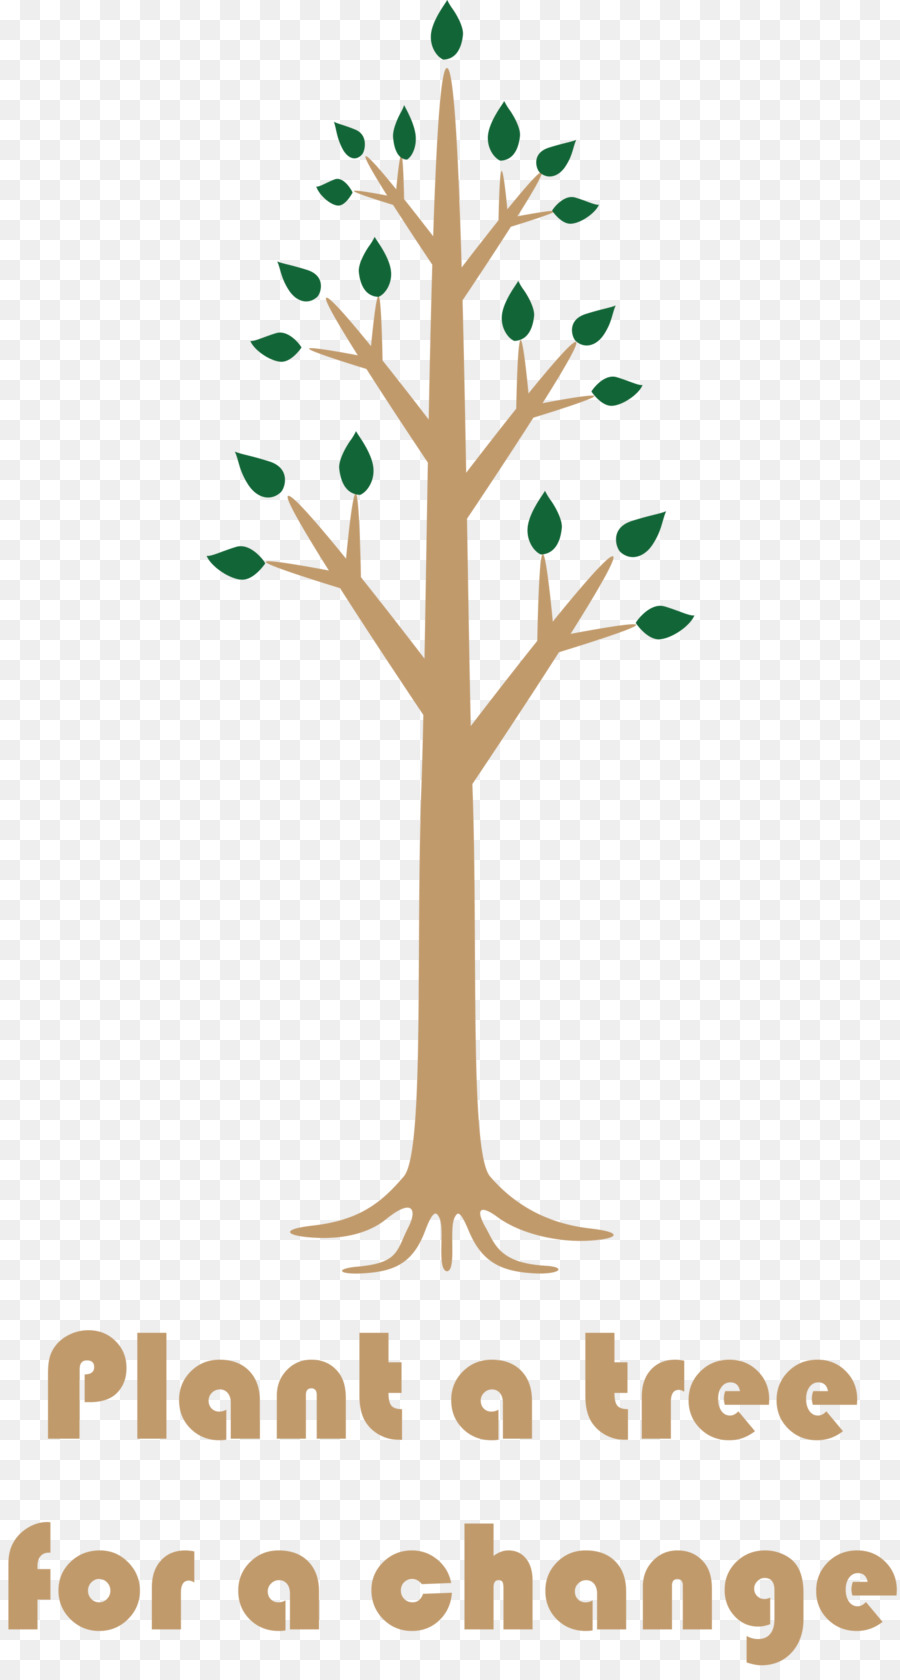 Pflanzen Sie einen Baum für einen Tag der Wechsellaube - 